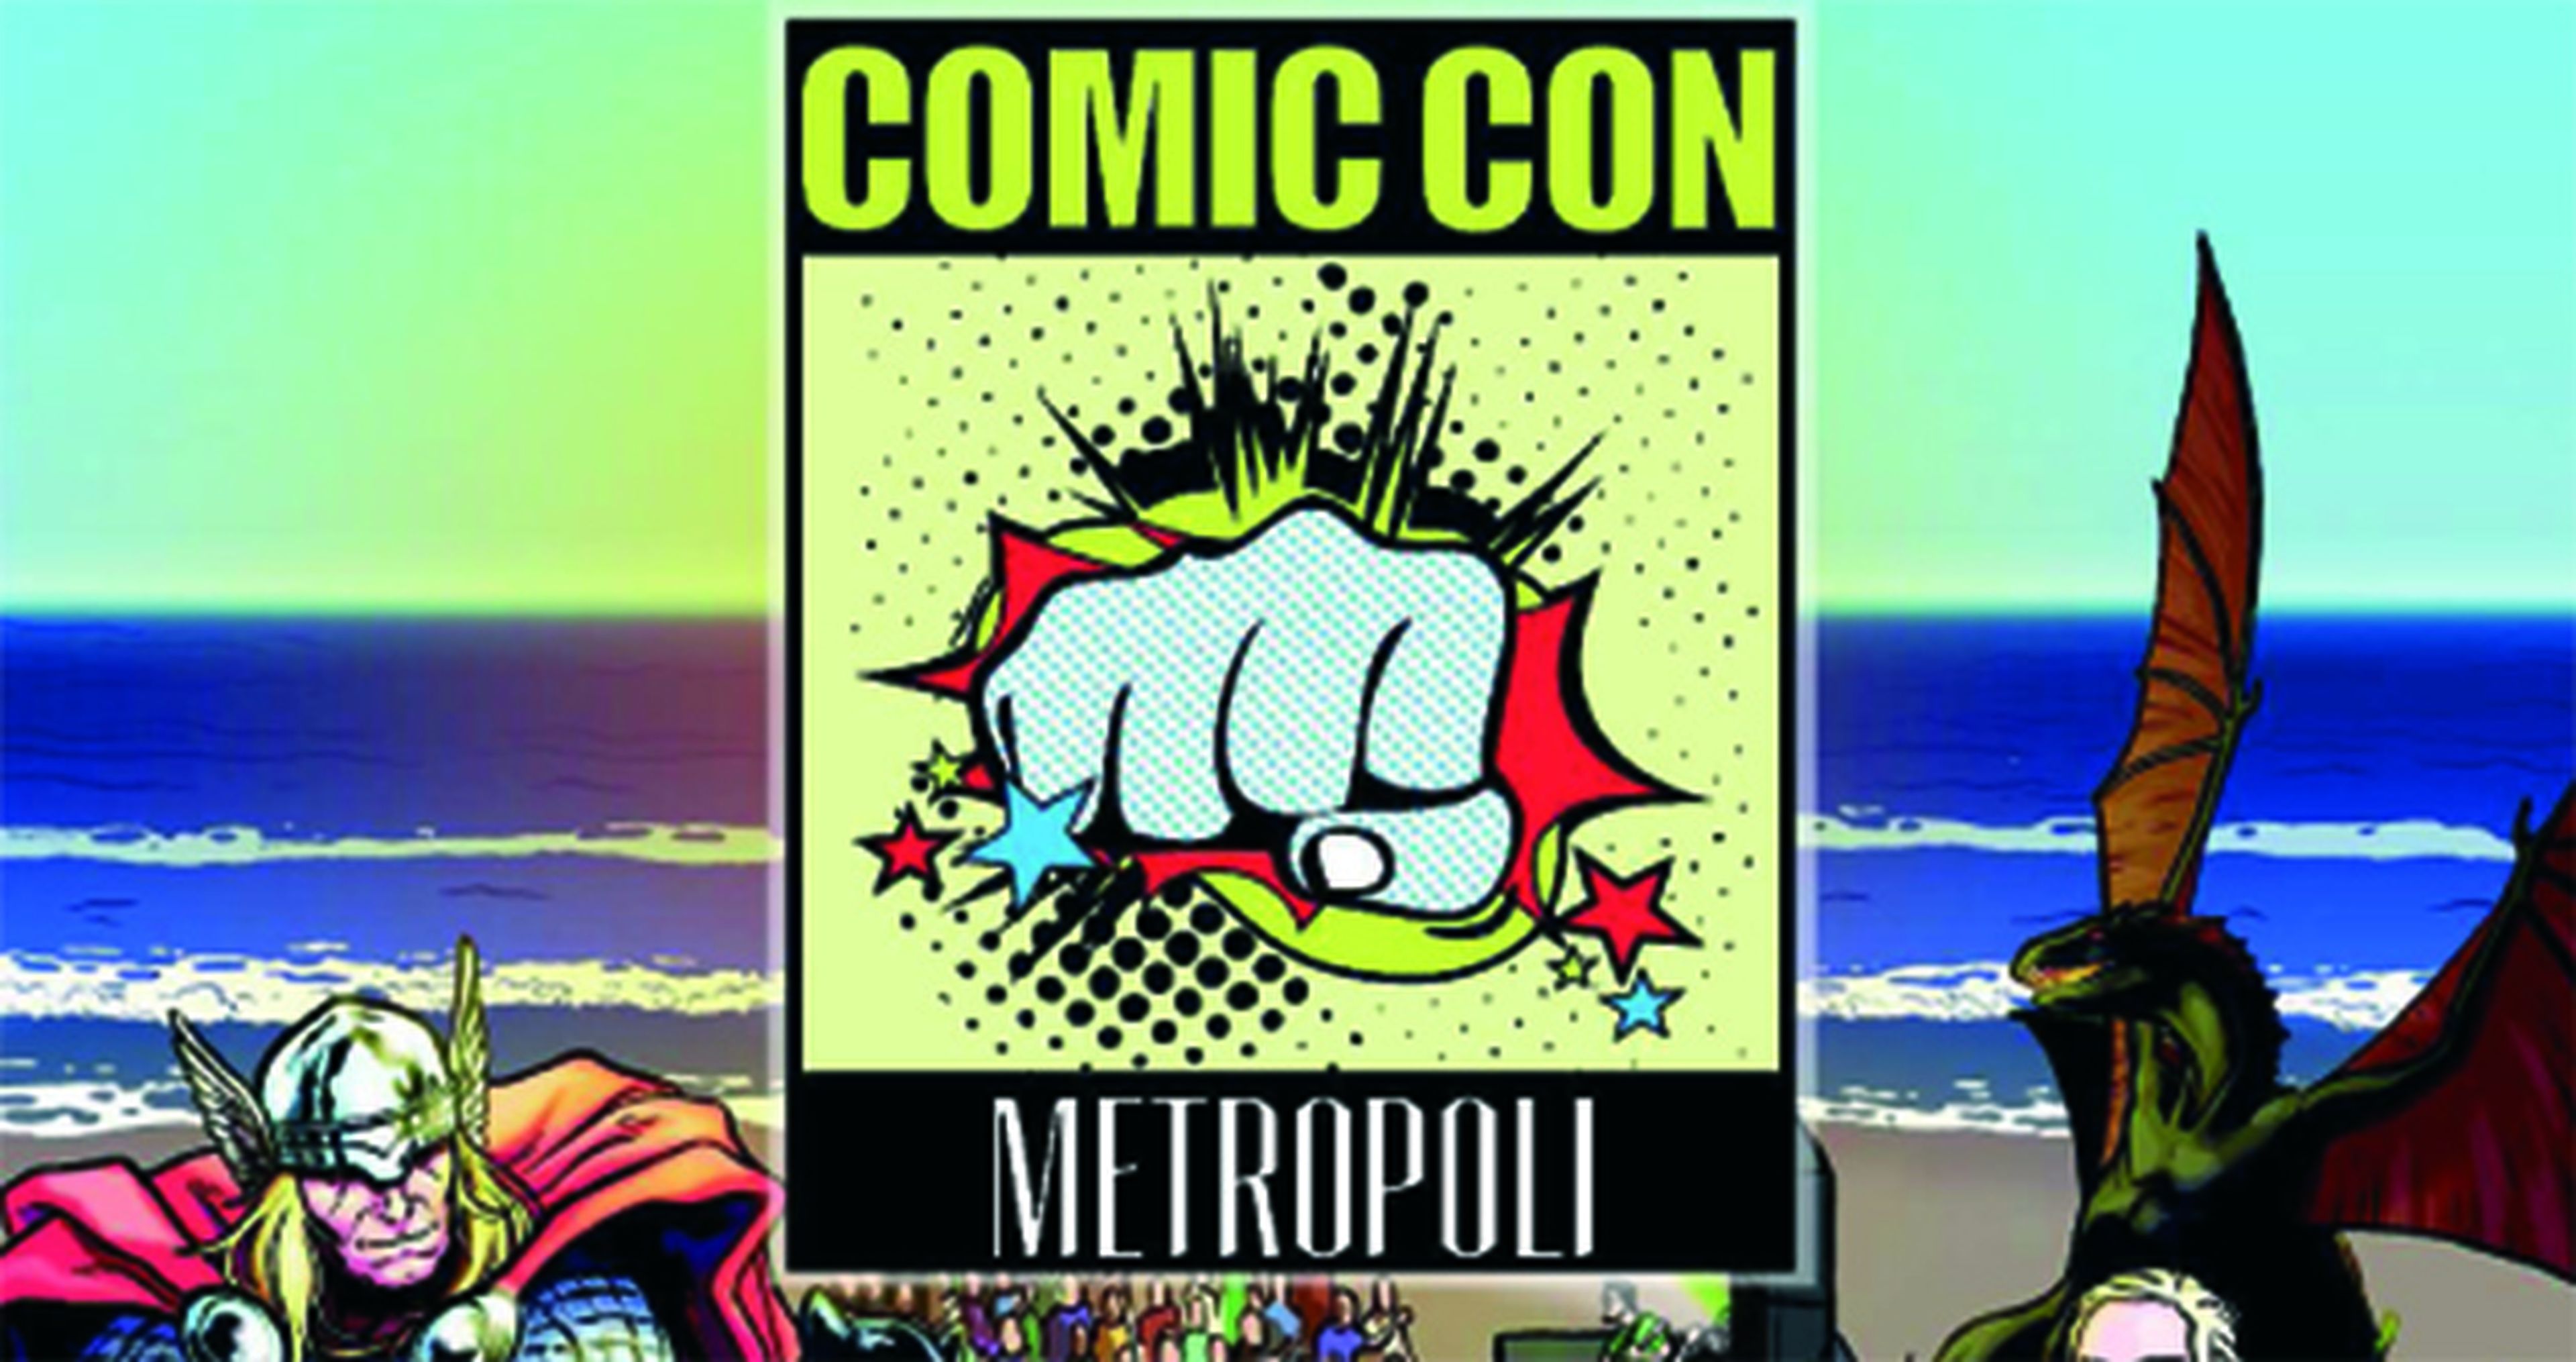 La Metrópoli Comic Con llega a Gijón